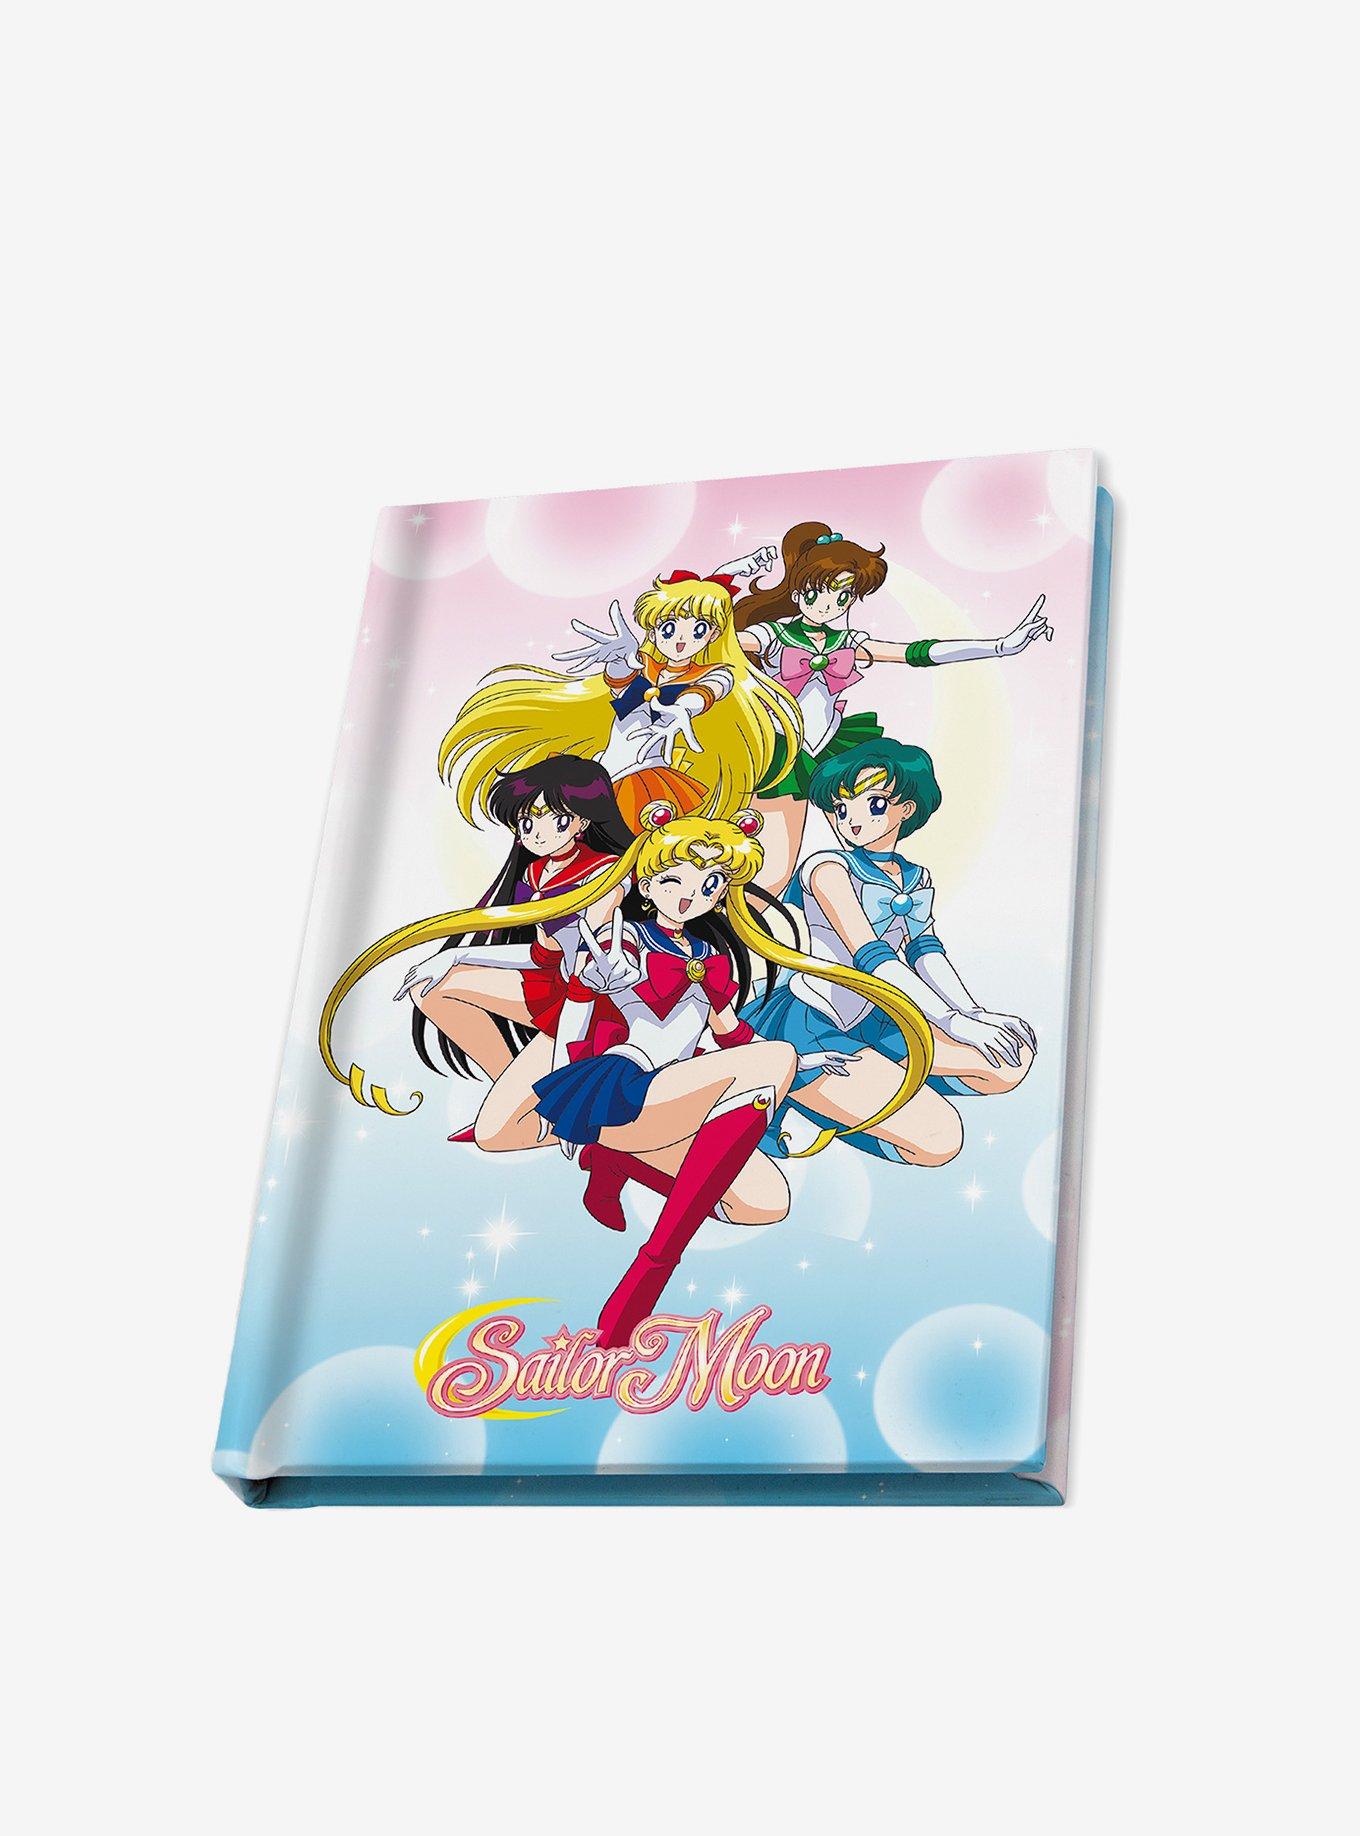 Sailor Moon Princess Mug Gift Set